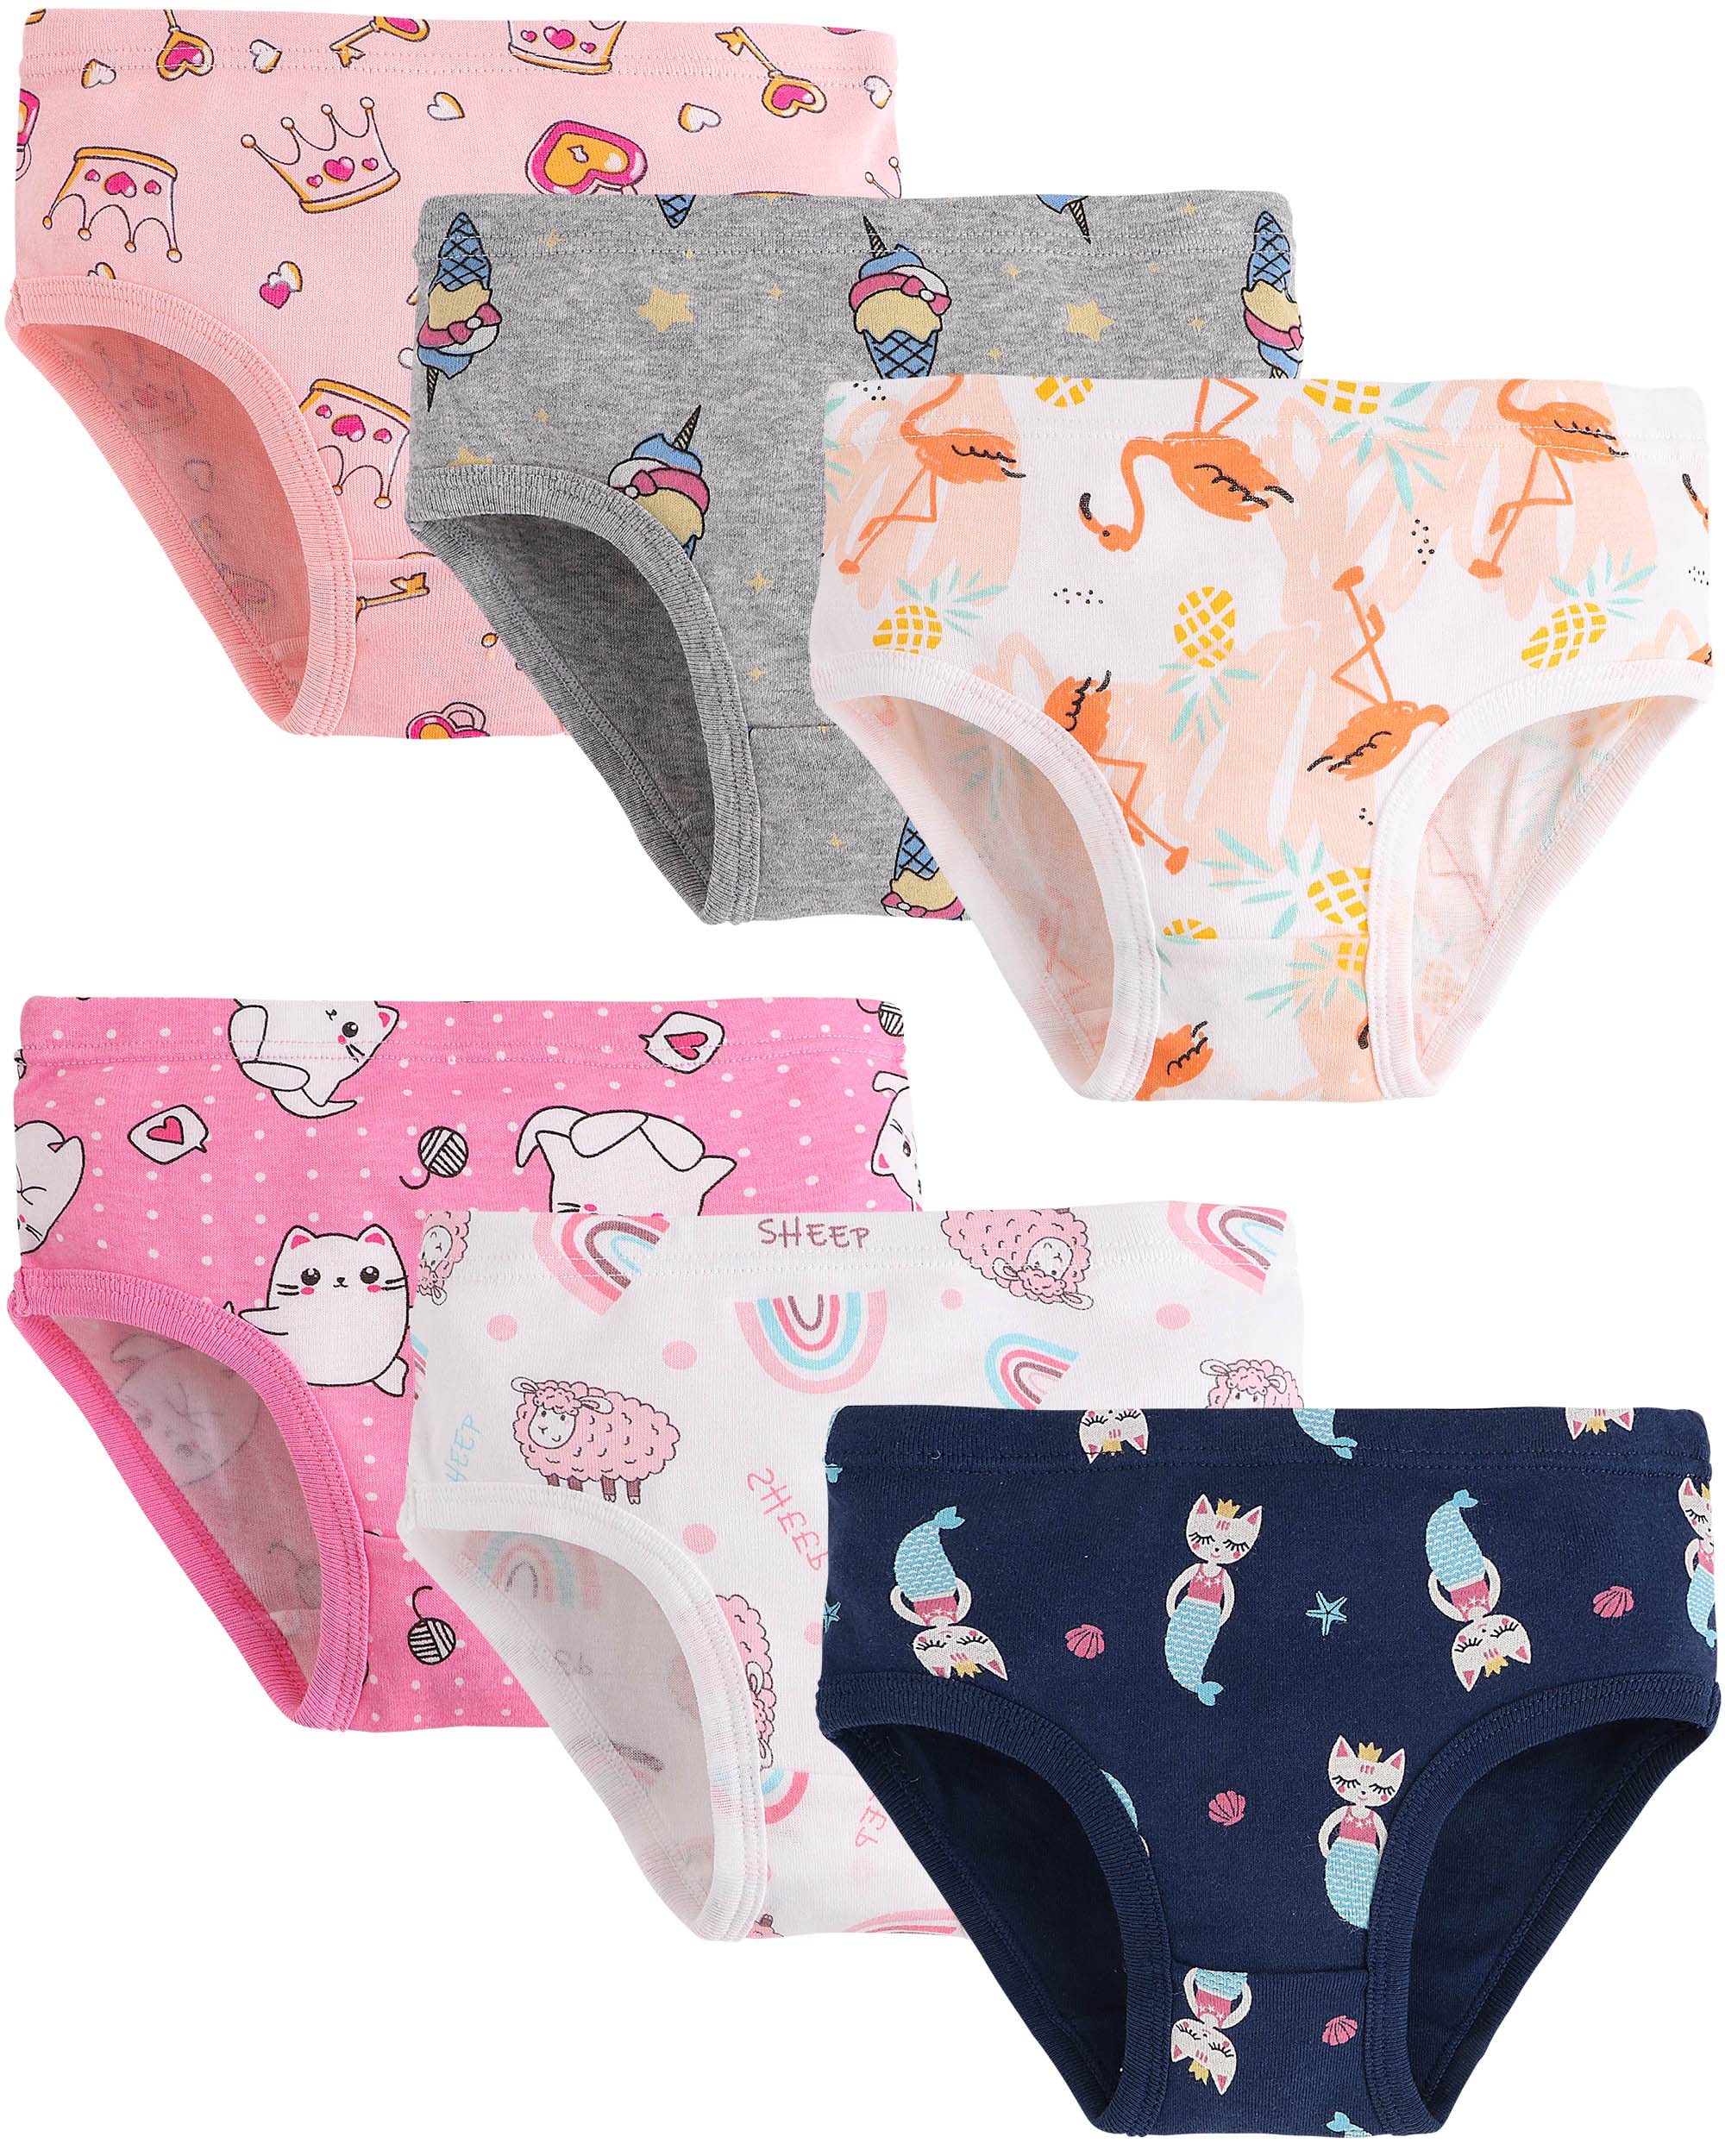 Finihen Little Girls Soft Cotton Underwear Comfort Panties Toddler Briefs  Size 10